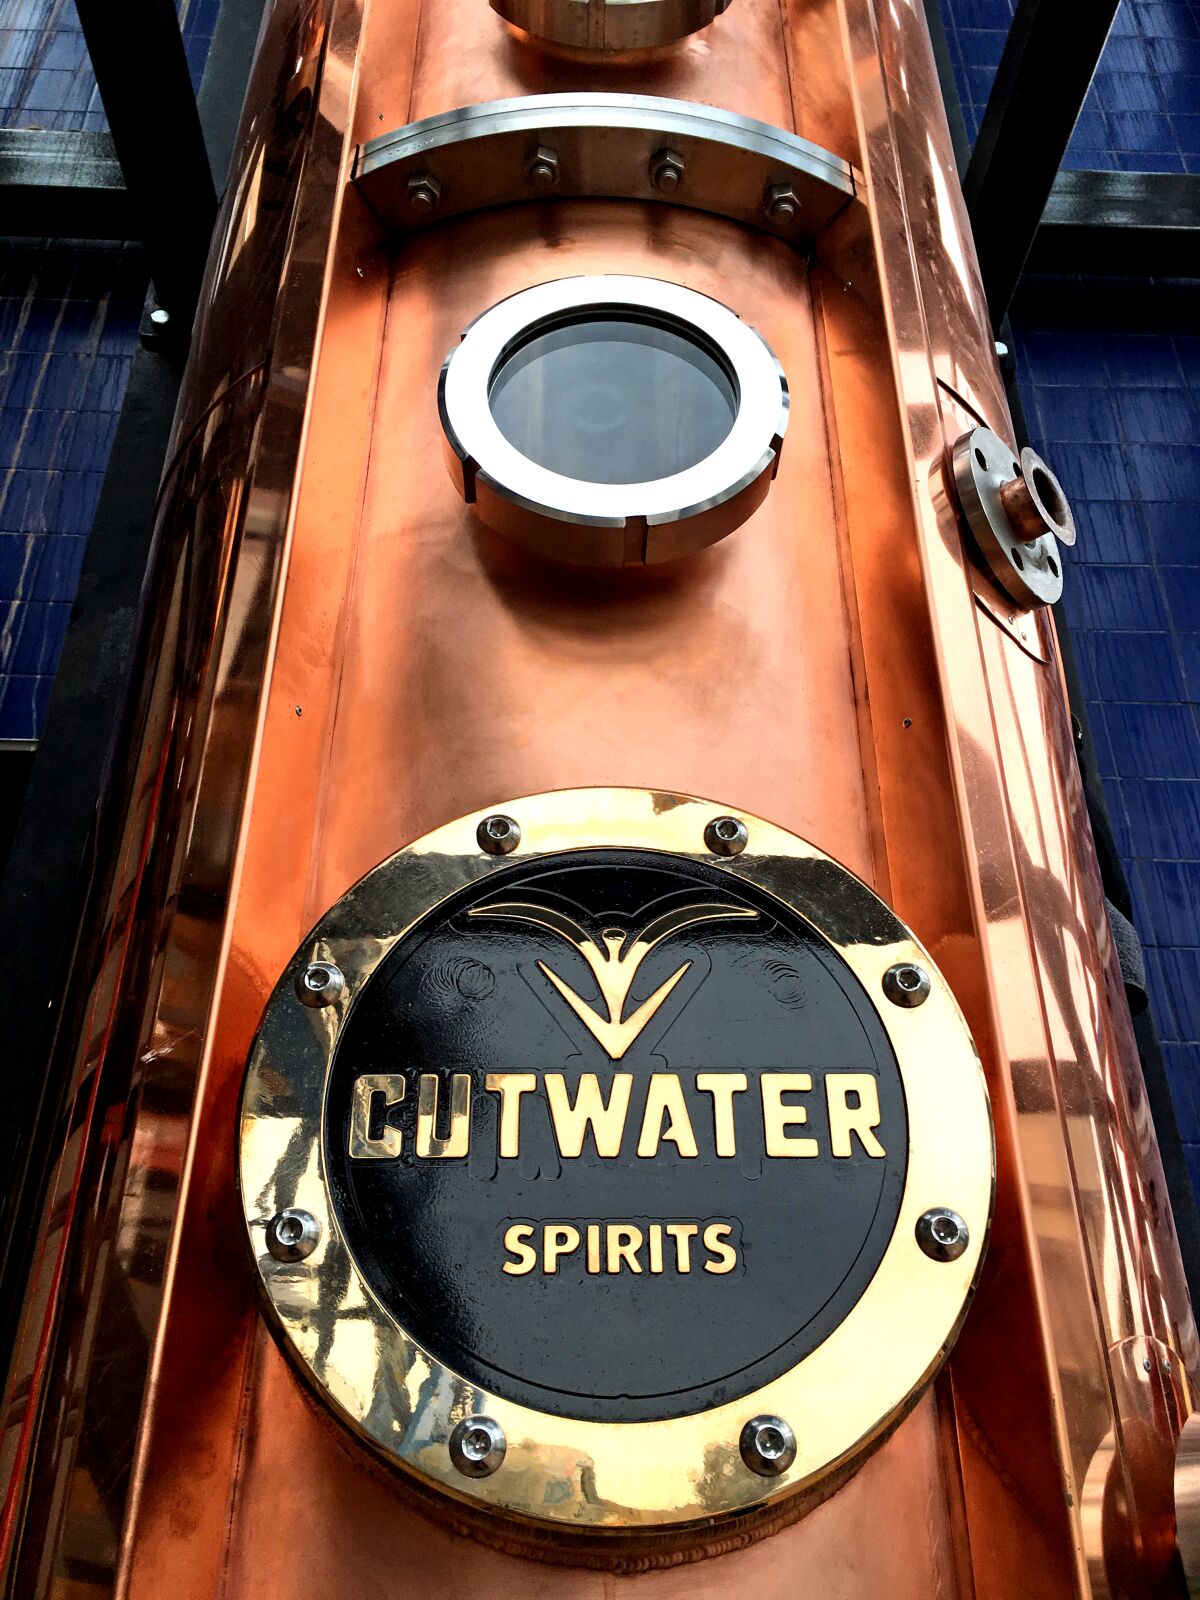 Cutwater's distillery